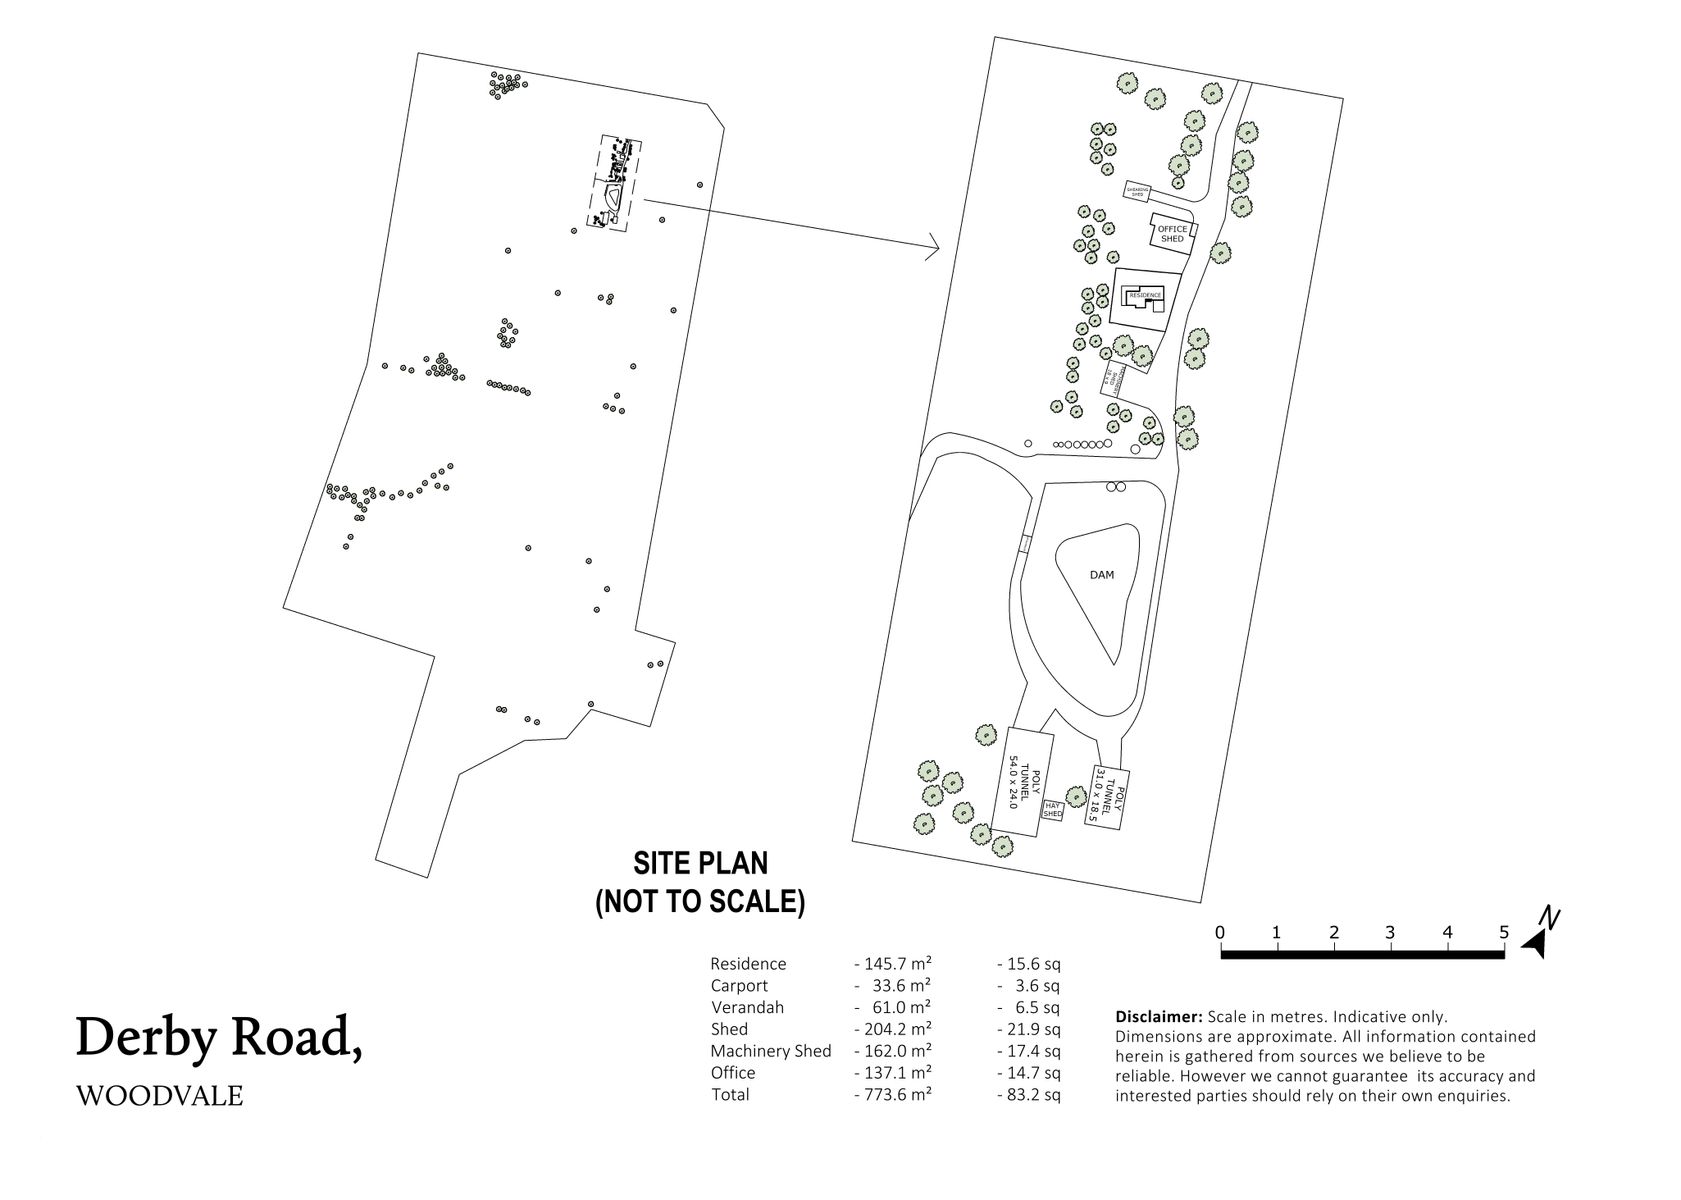 Derby Road Woodvale Siteplan Highres 1